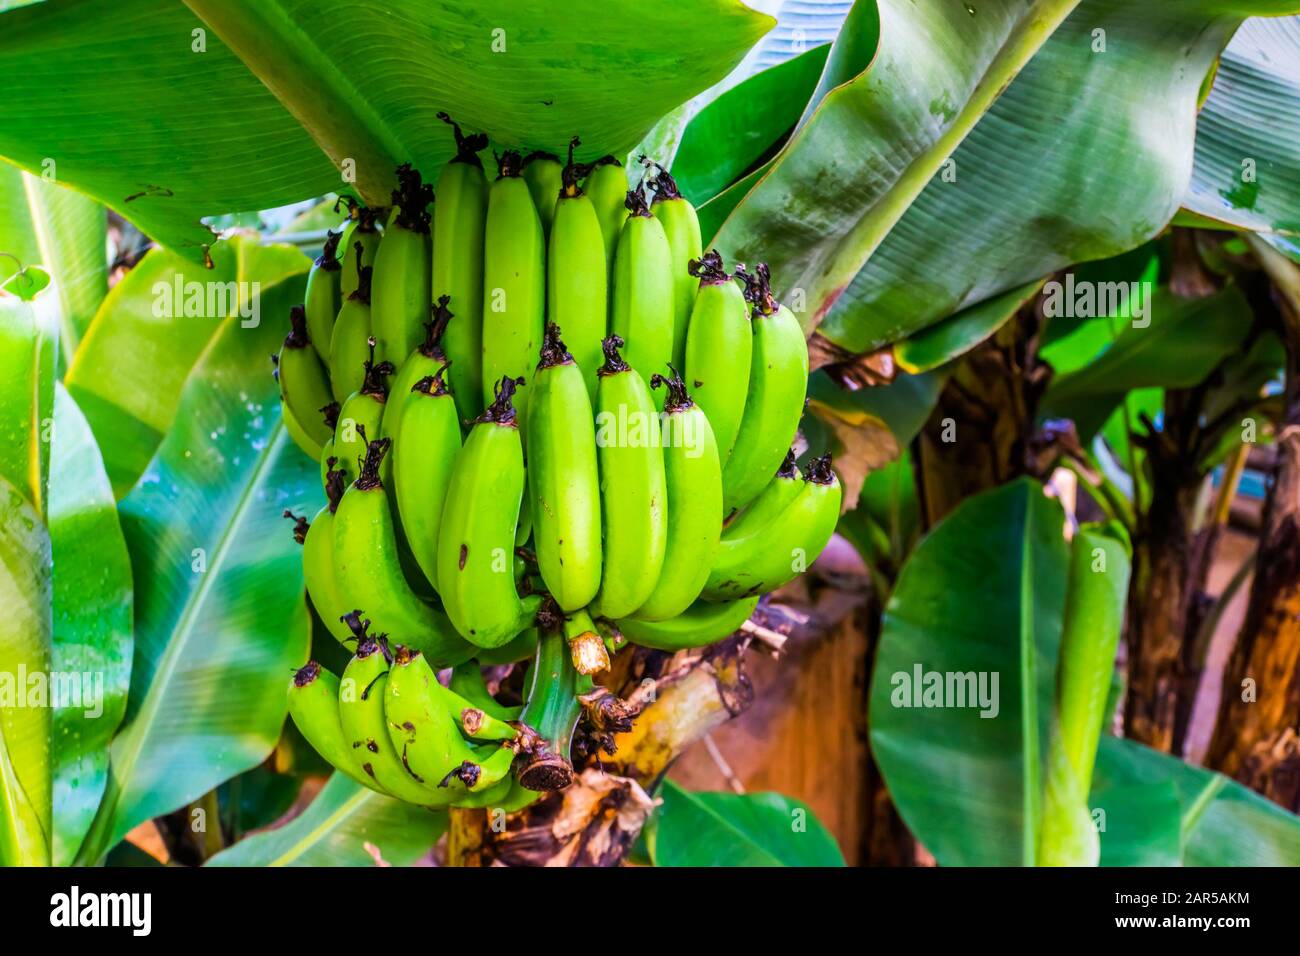 Plantas que dan fruto fotografías e imágenes de alta resolución - Alamy